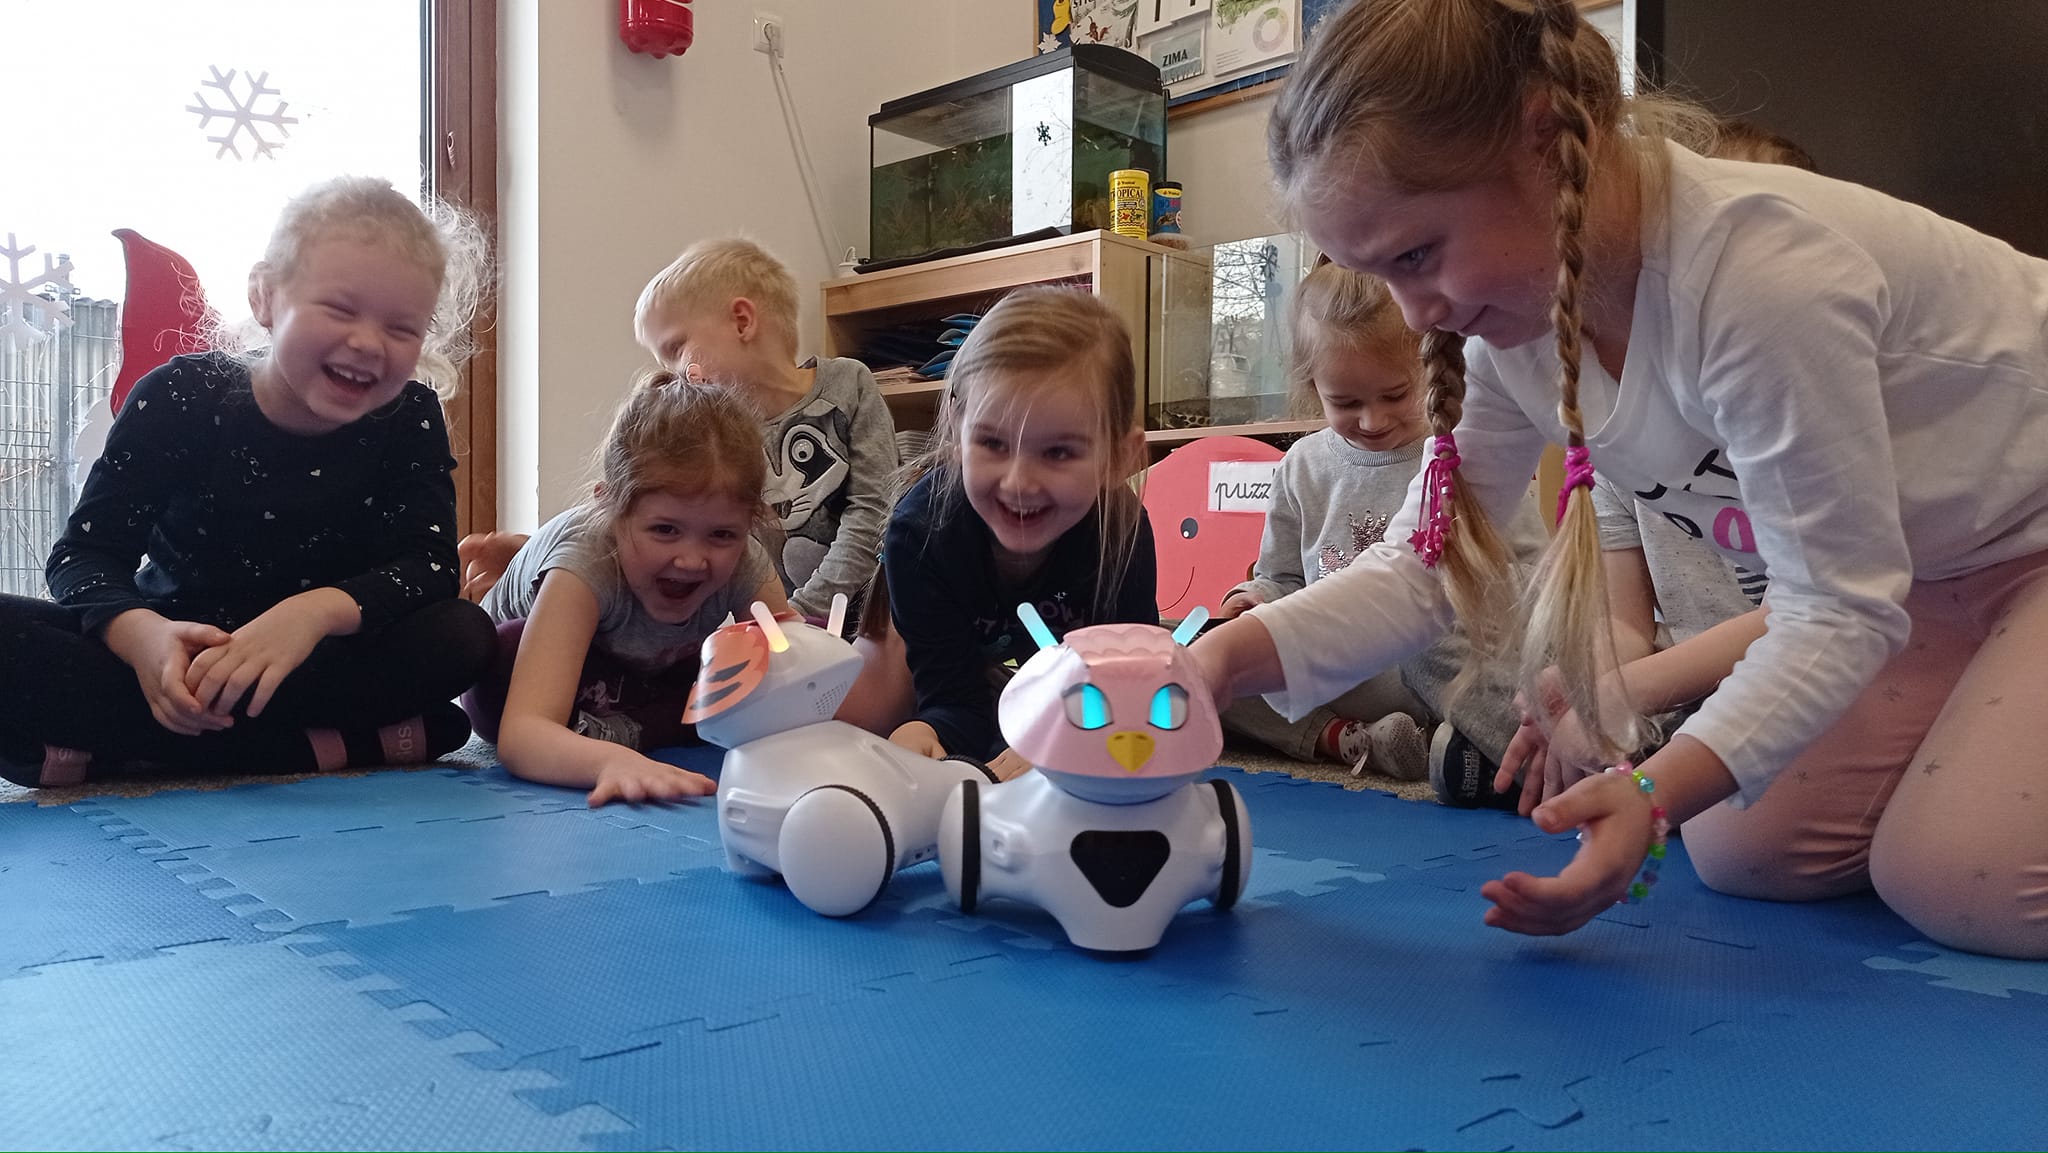 Grupa roześmianych dzieci klęczy, siedzi lub półleży na macie, bawiąc się robotami do programowania